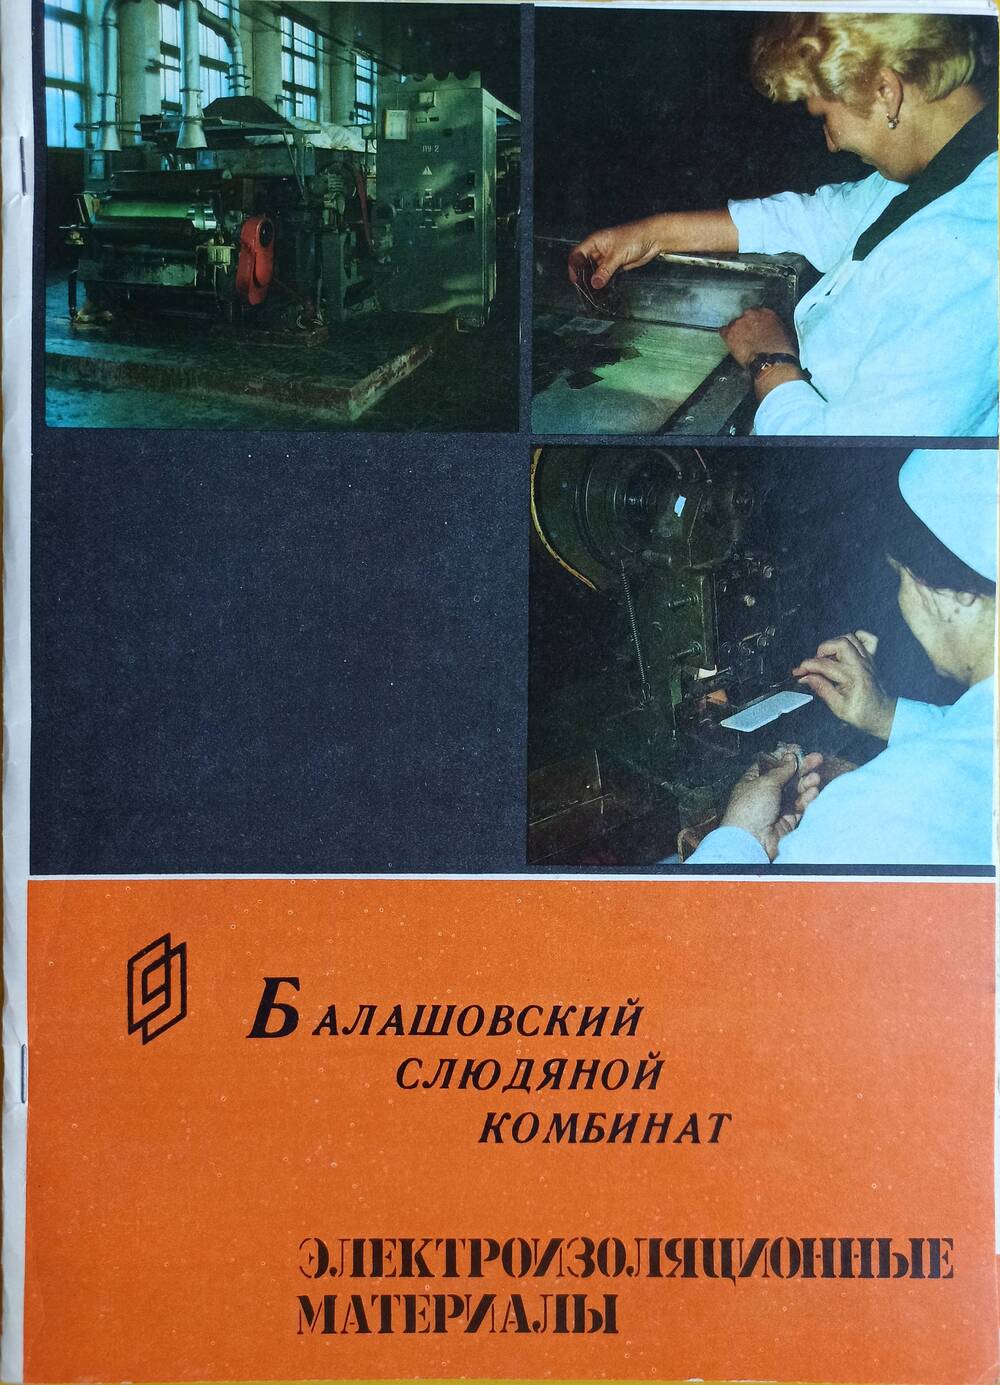 Брошюра
«Балашовский слюдяной комбинат. 
Электроизоляционные материалы»